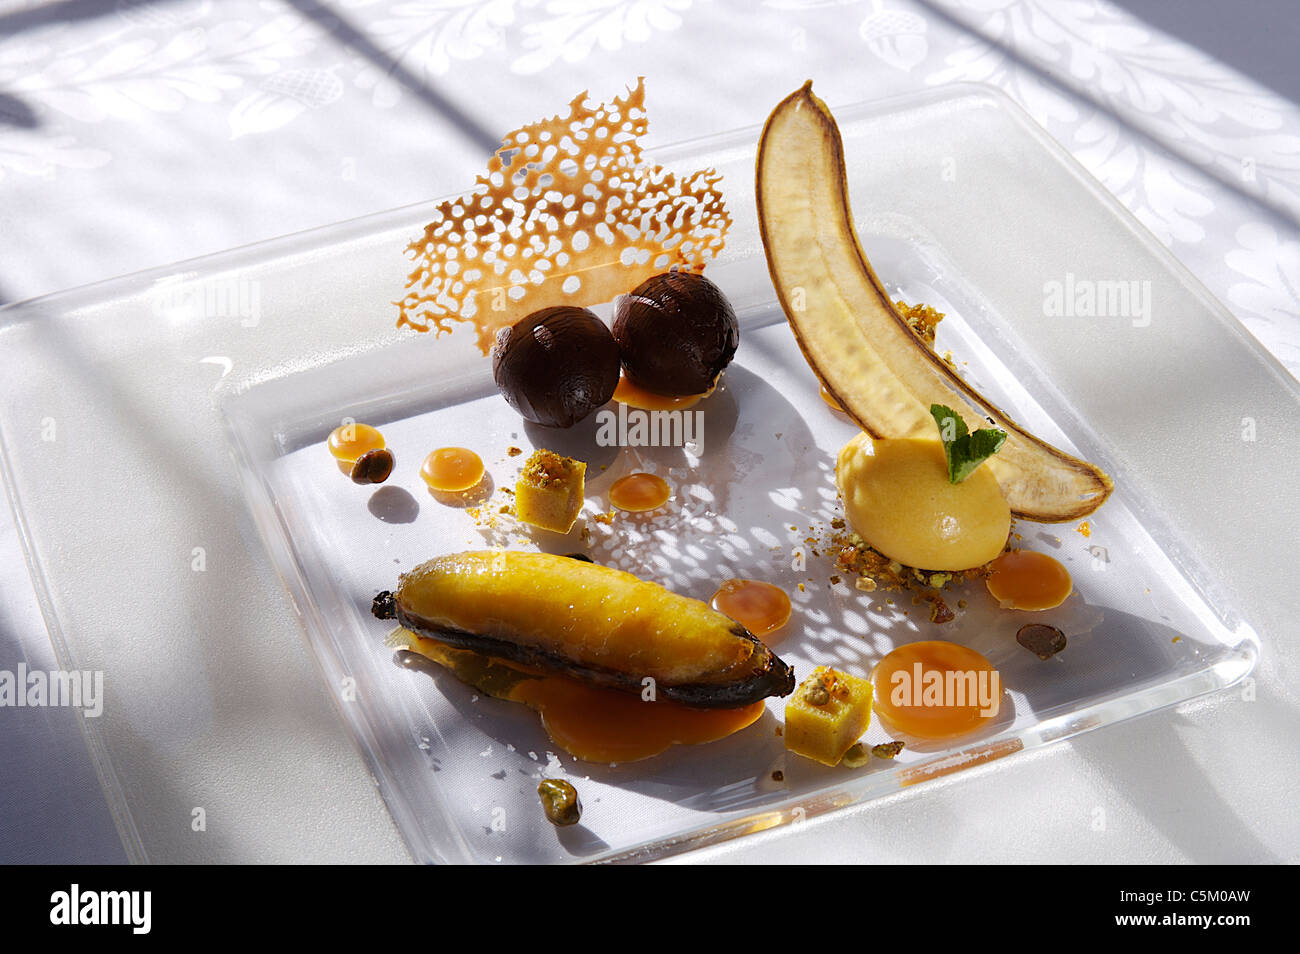 Schokolade und Olivenöl Trüffel mit gebackene Banane auf dem Milchglas Silbertablett serviert. Stockfoto